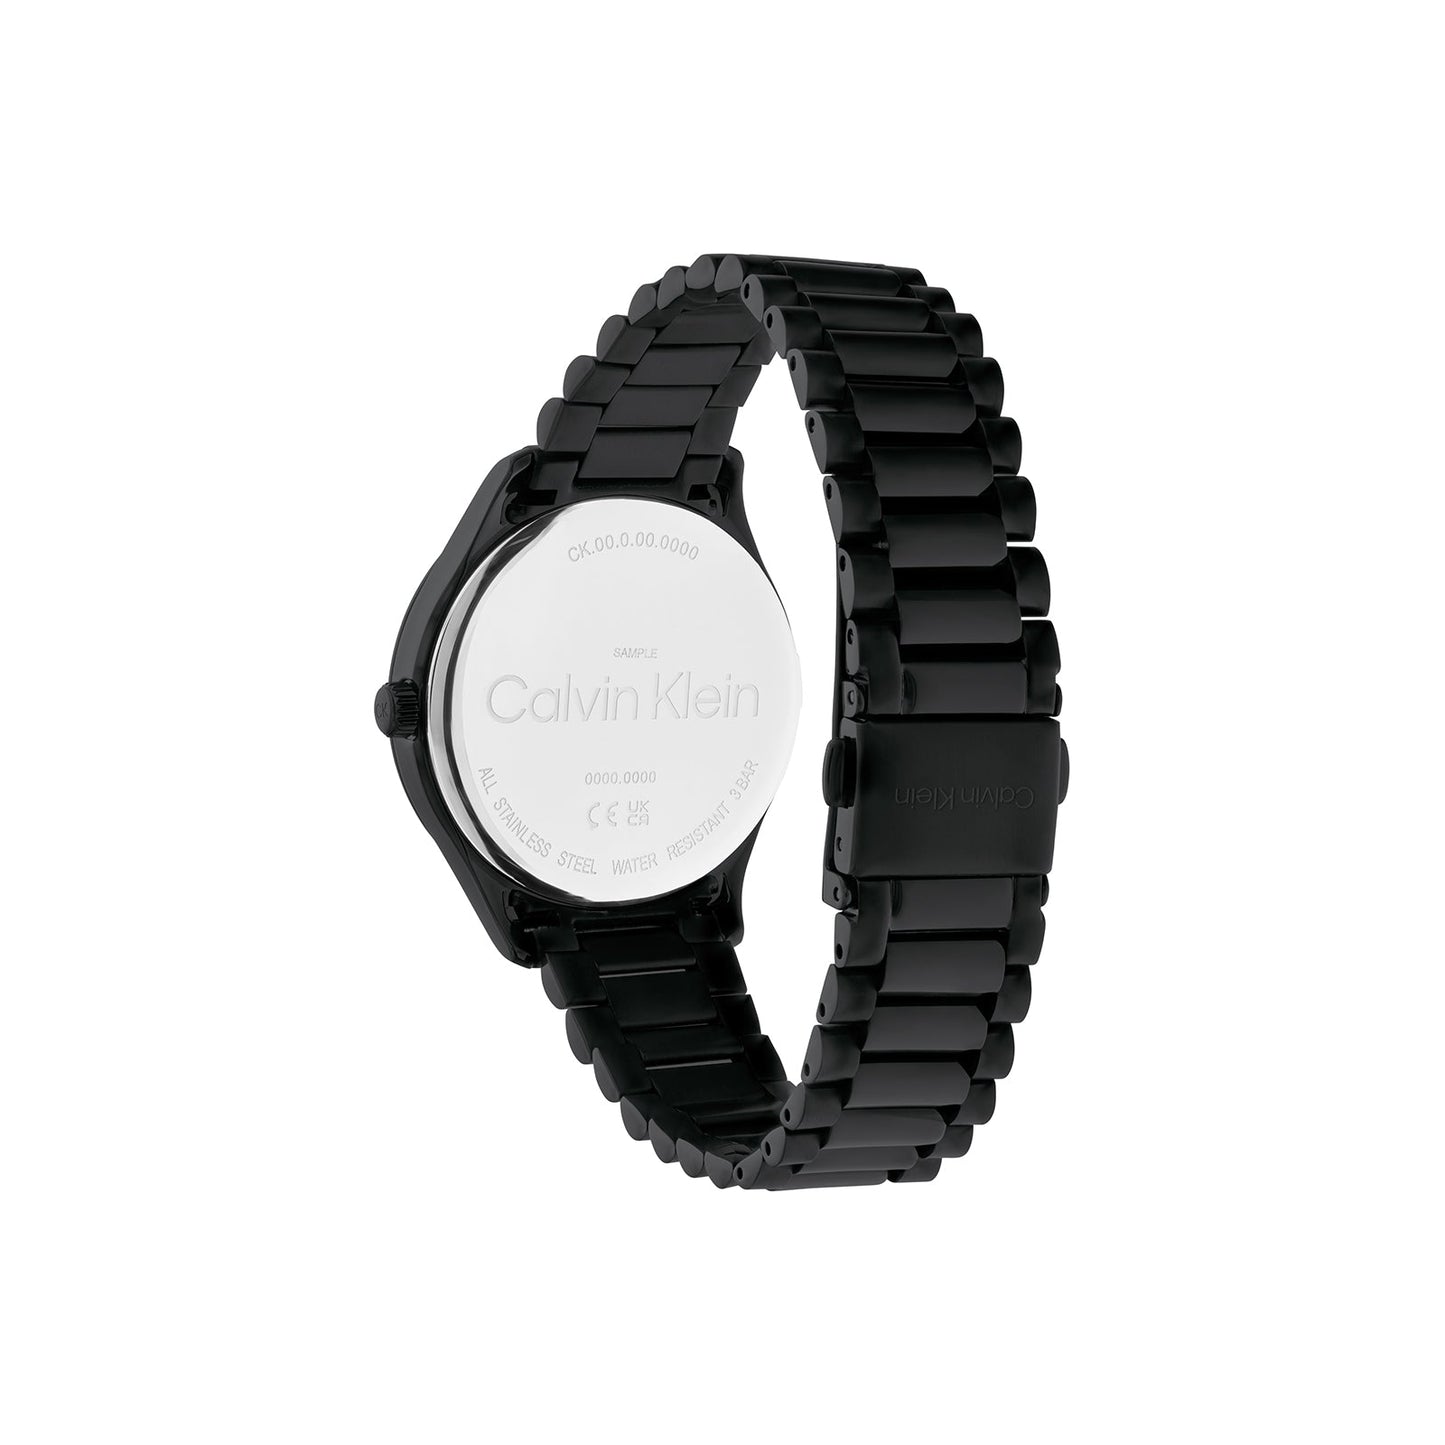 Calvin Klein 25200170 Unisex Steel Watch